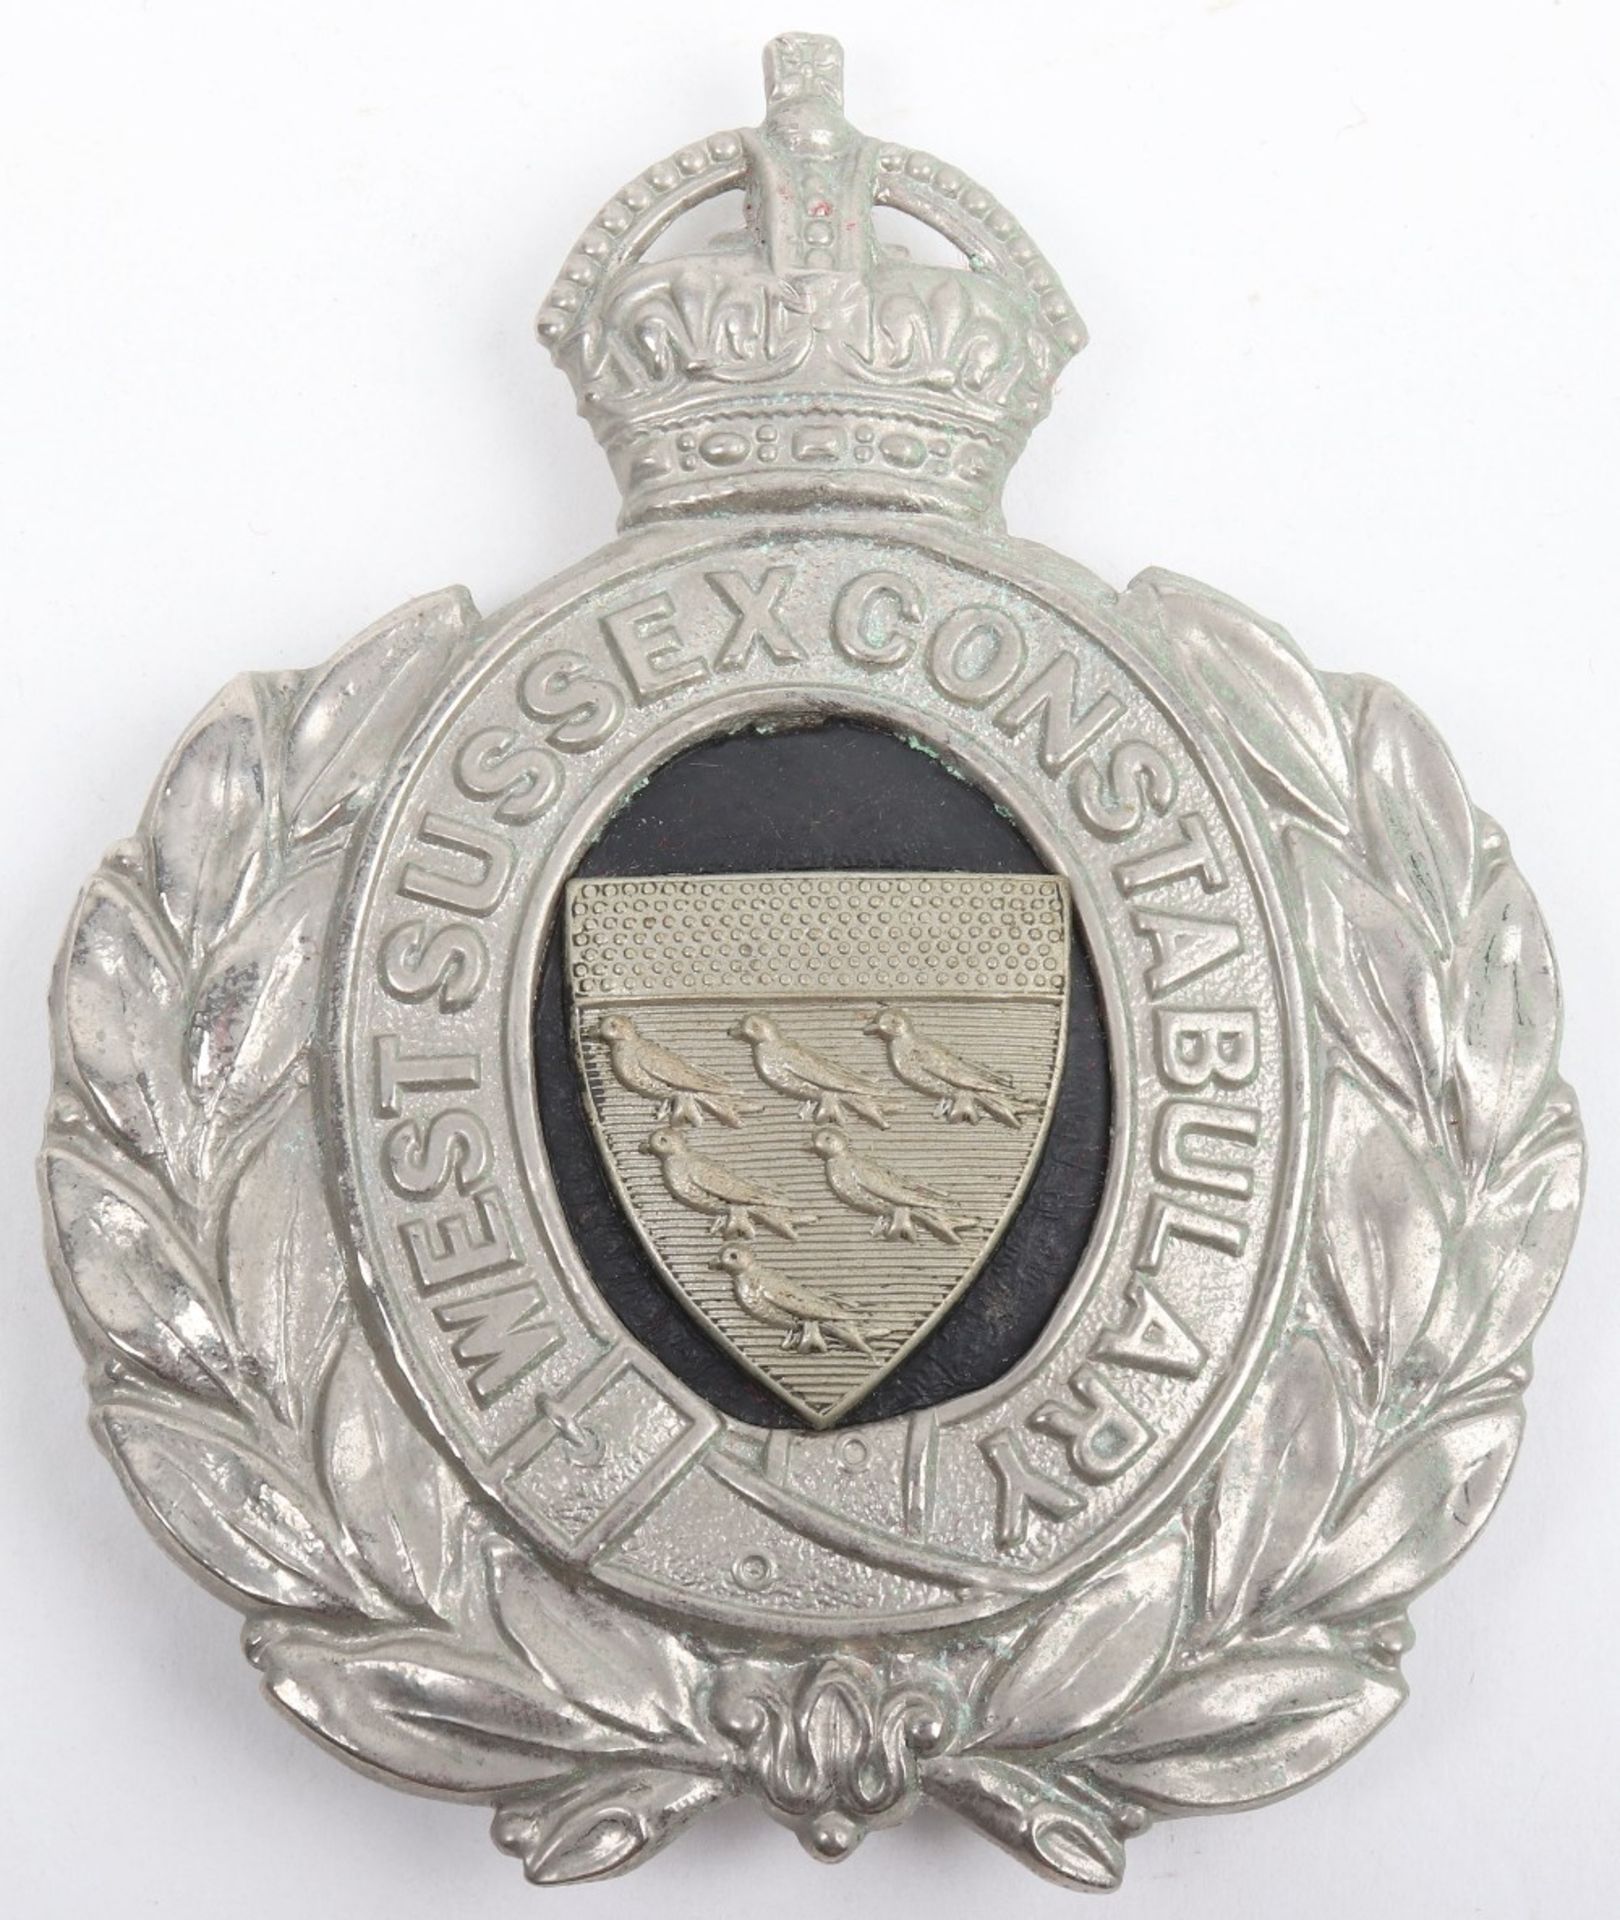 West Sussex Constabulary Helmet Badge